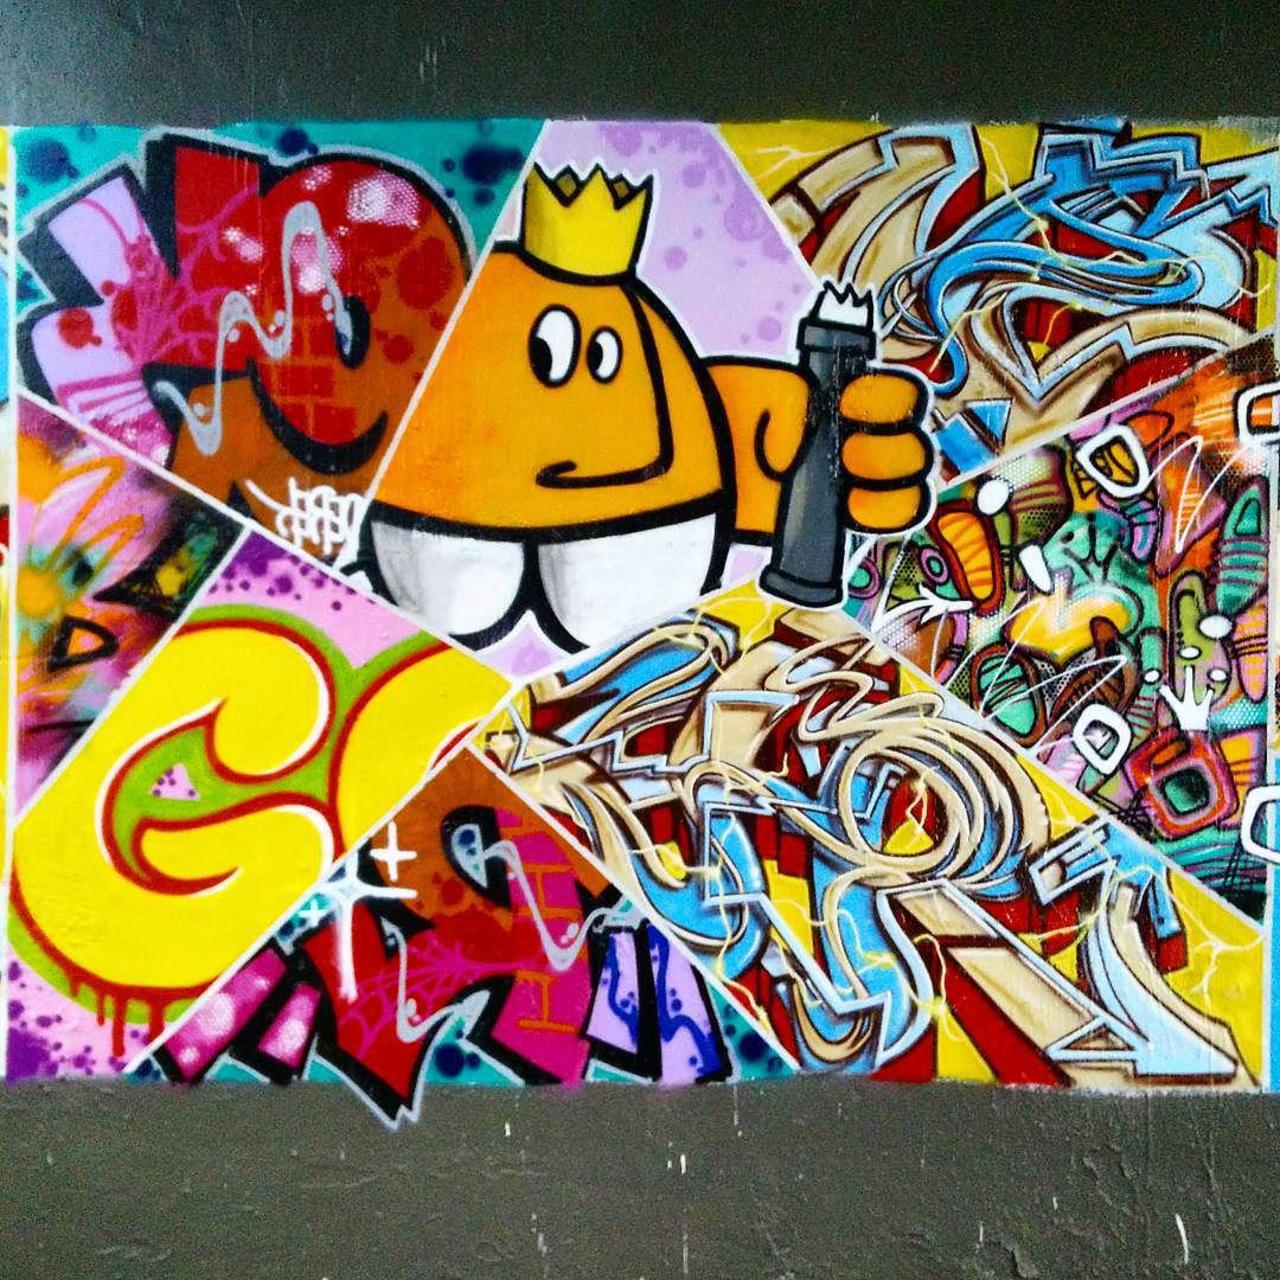 #Paris #graffiti photo by @ceky_art http://ift.tt/1hOdcEQ #StreetArt https://t.co/xwZ2aSSvD3